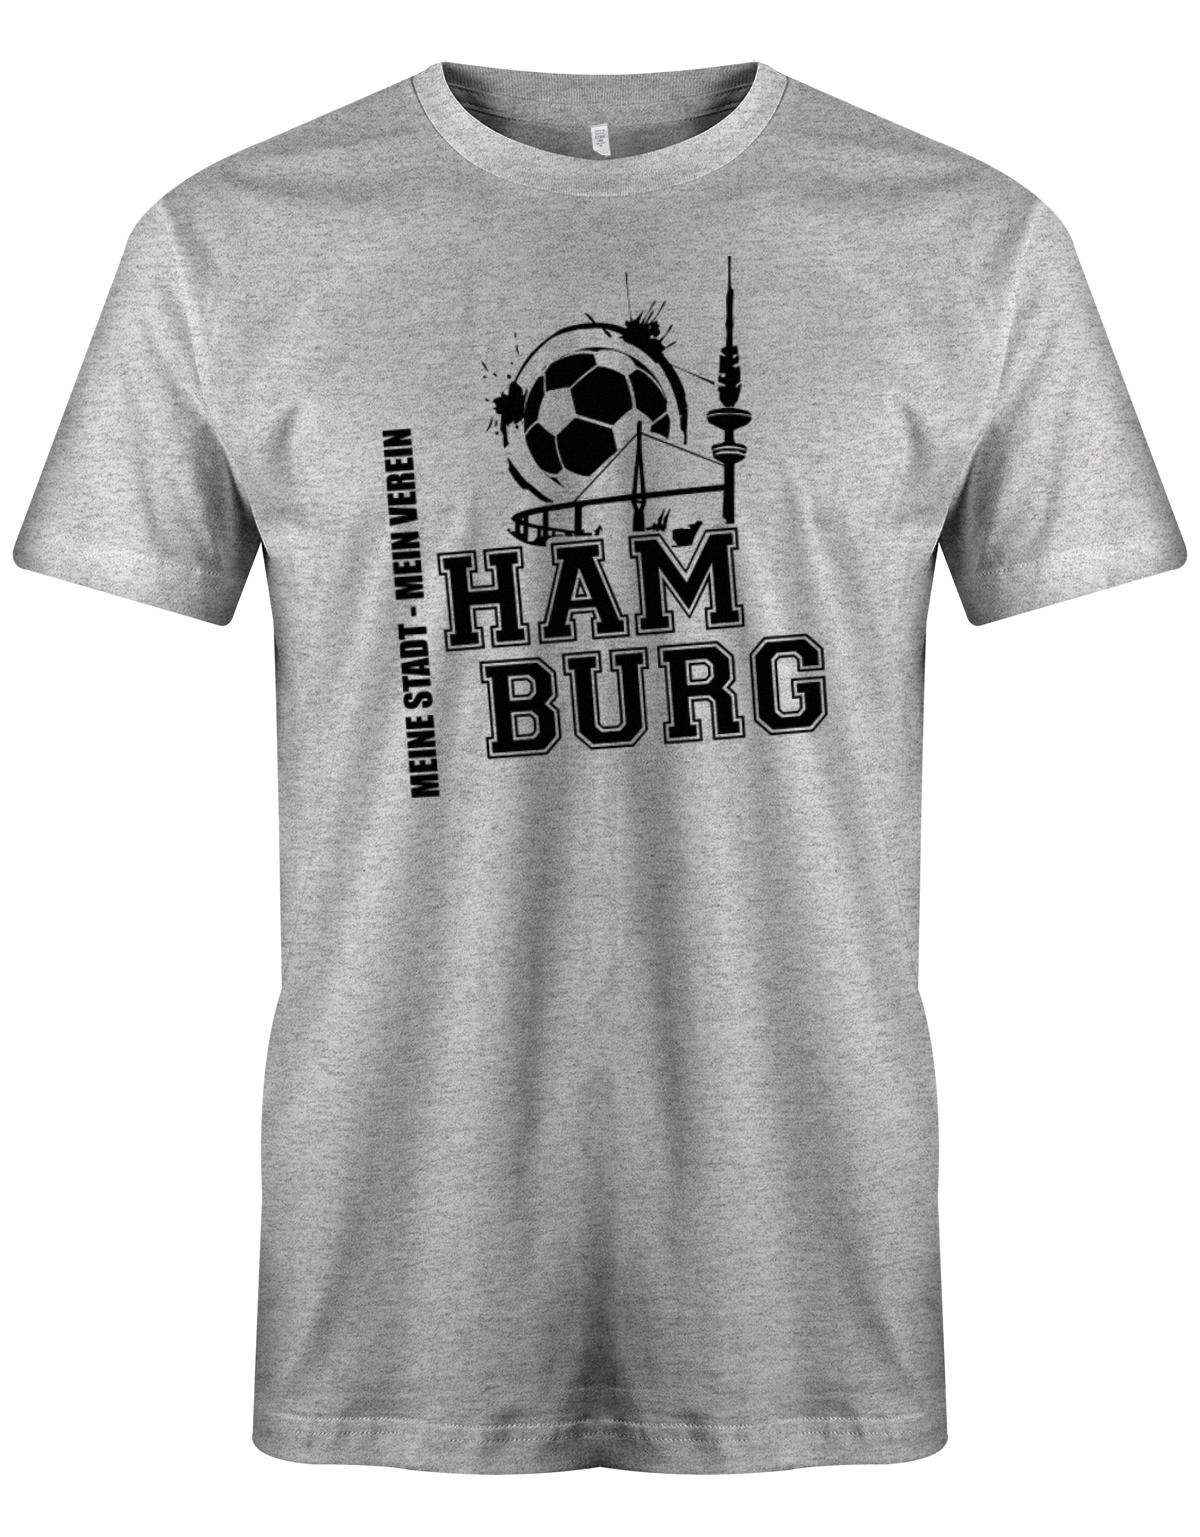 Hamburg-Meine-Stadt-Mein-verein-Herren-Shirt-Grau